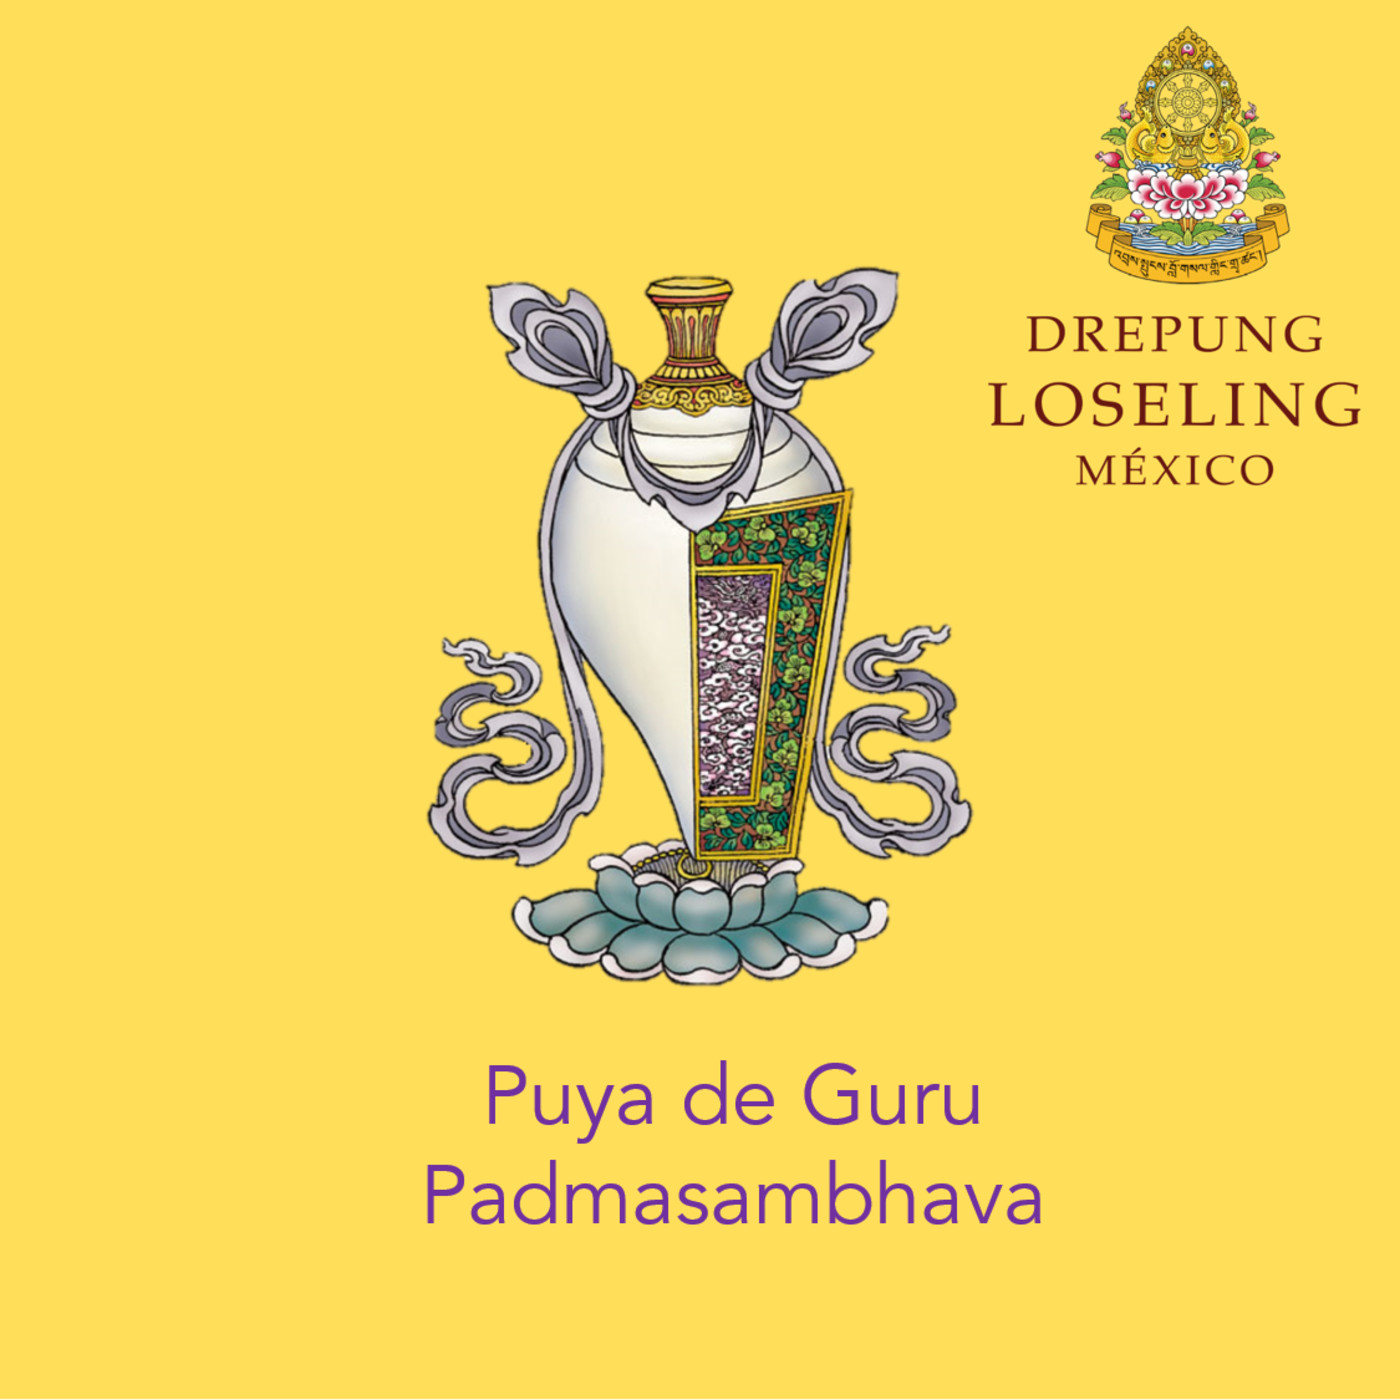 Puya de Guru Padmasambhava, explicación en español, ceremonia en tibetano.